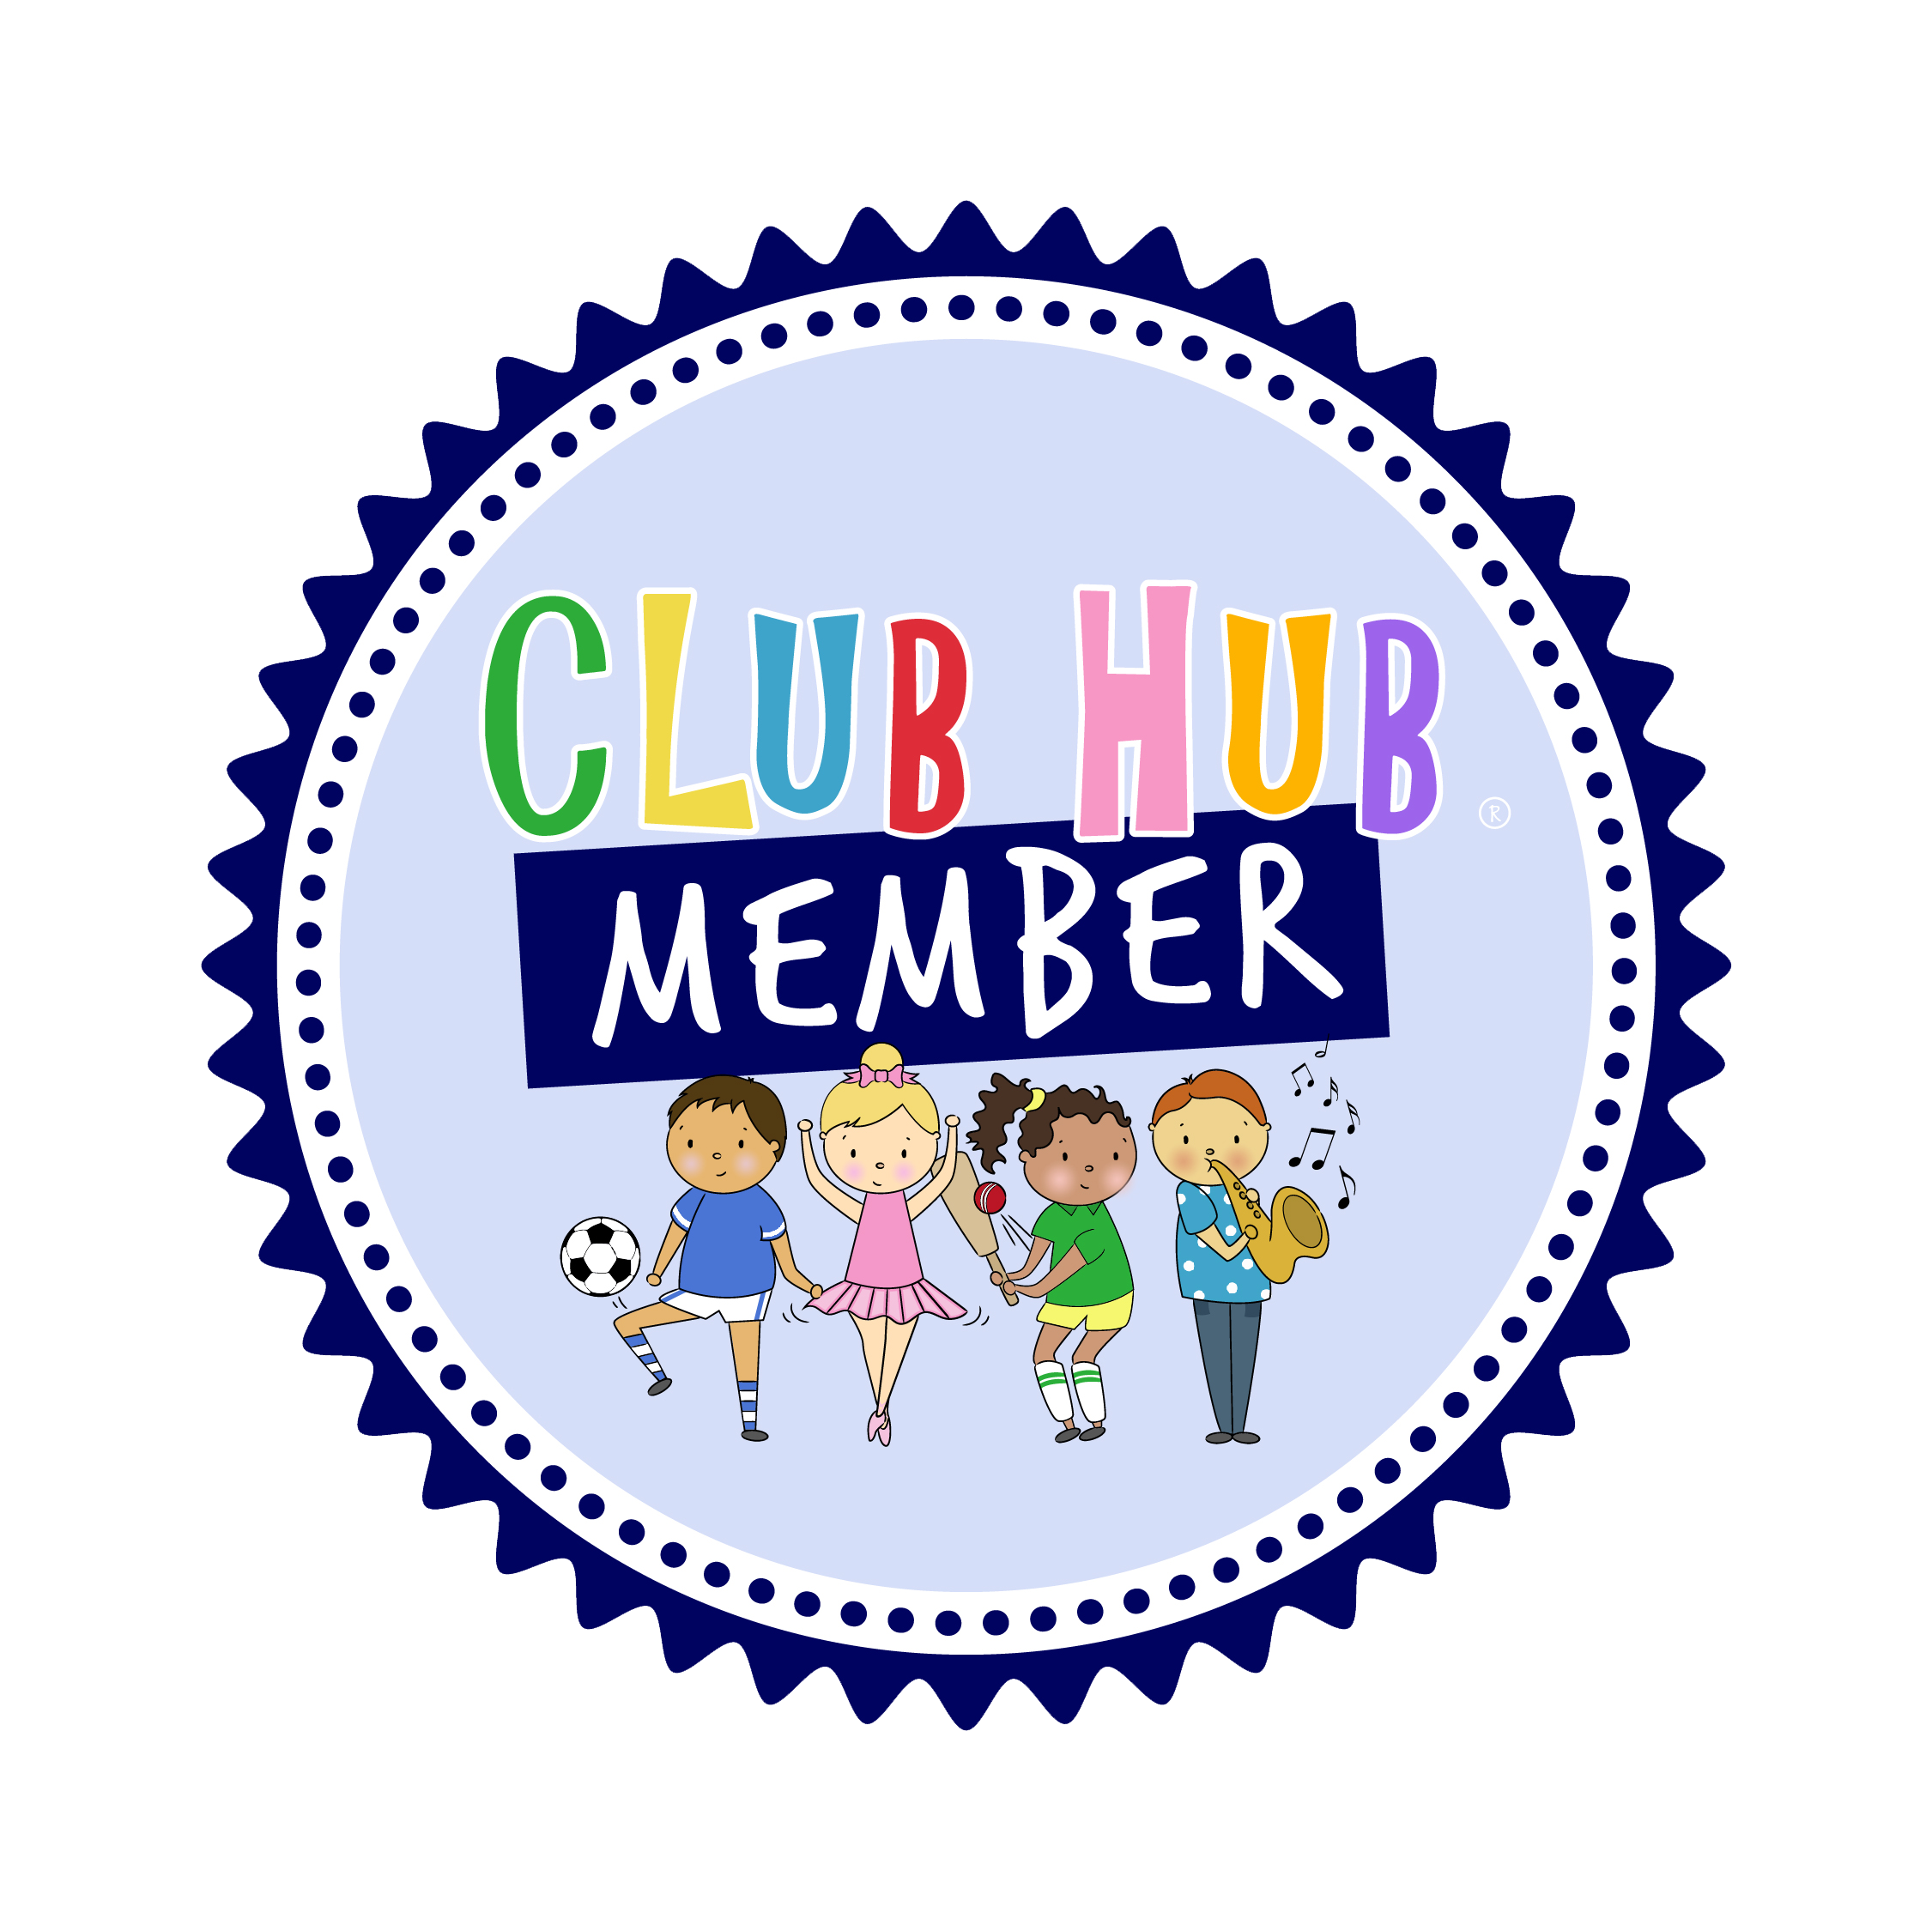 750-club-hub-verification-badge-16965157304694.png